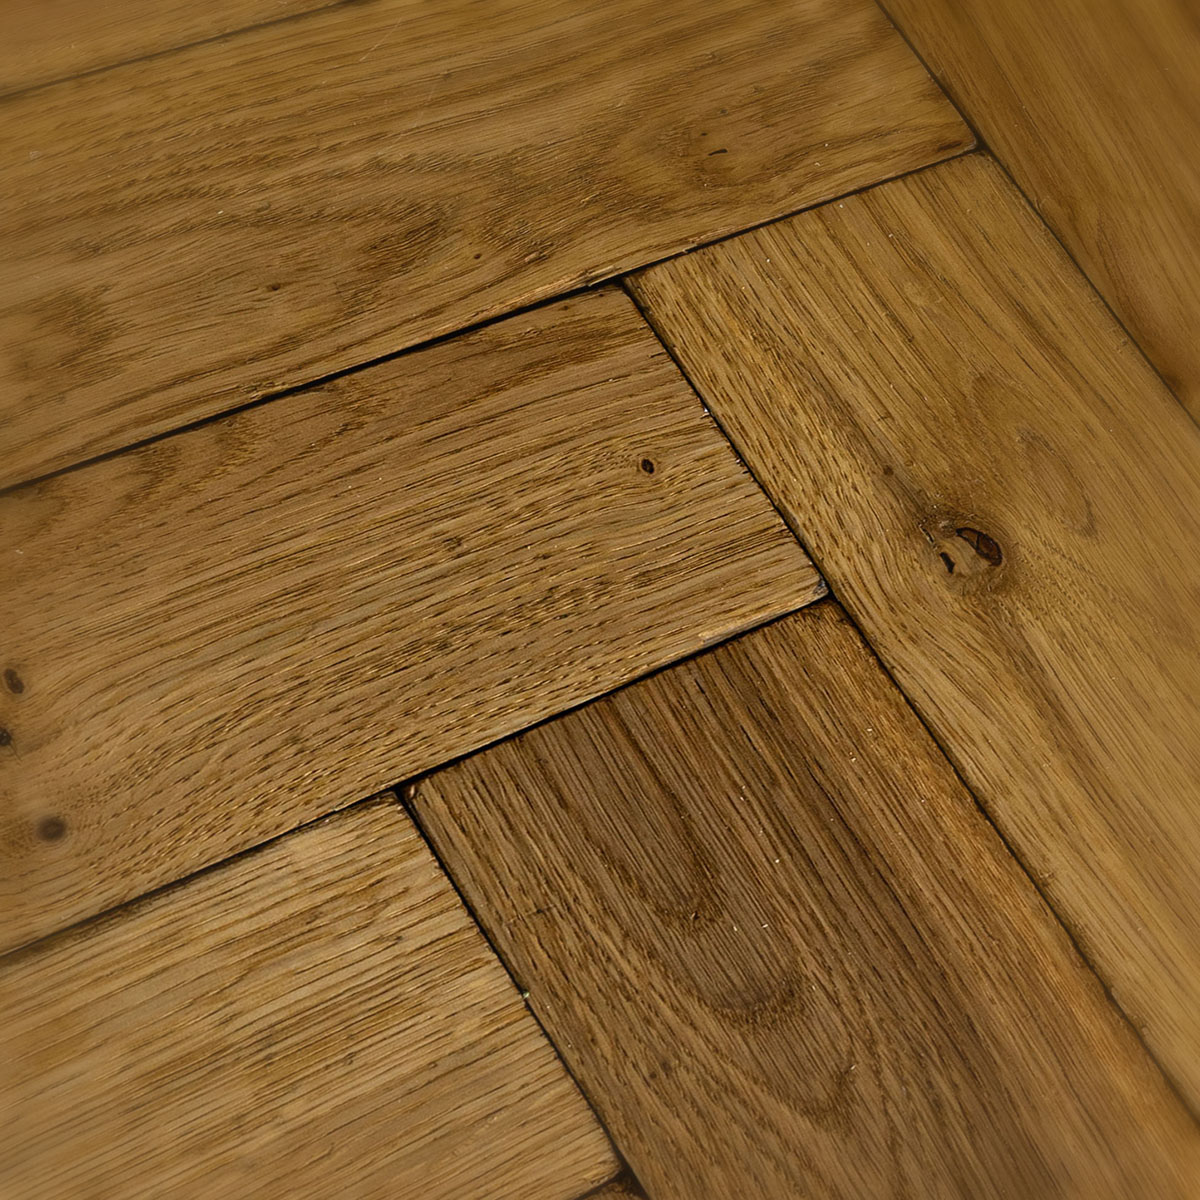 Malton Mews - Vintage Solid Oak Parquet Floor